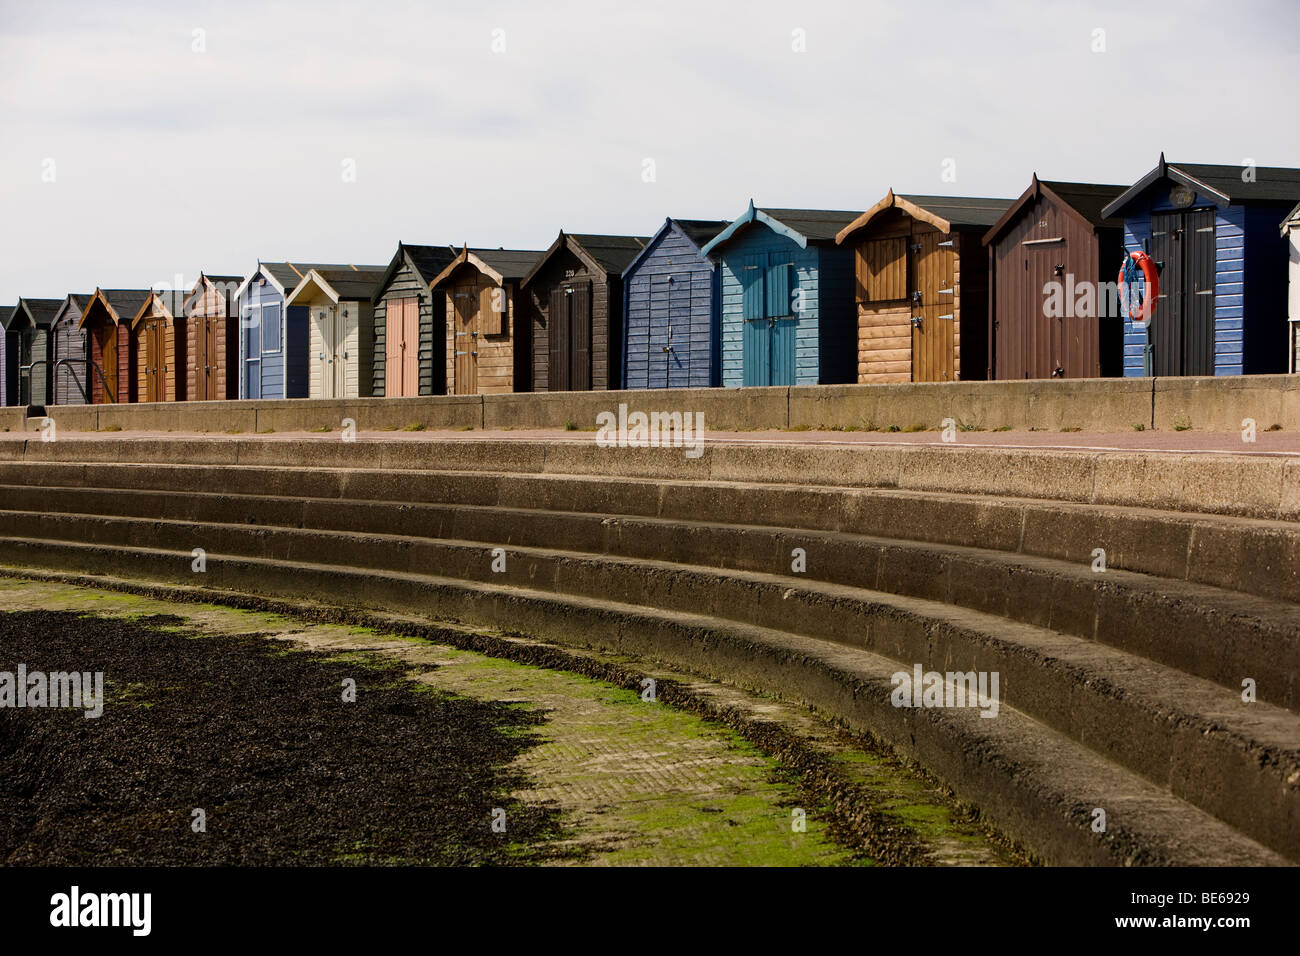 Pintadas cabañas de playa en el paseo marítimo de la ciudad costera de Essex Brightlingsea son la atracción estrella del resort Foto de stock